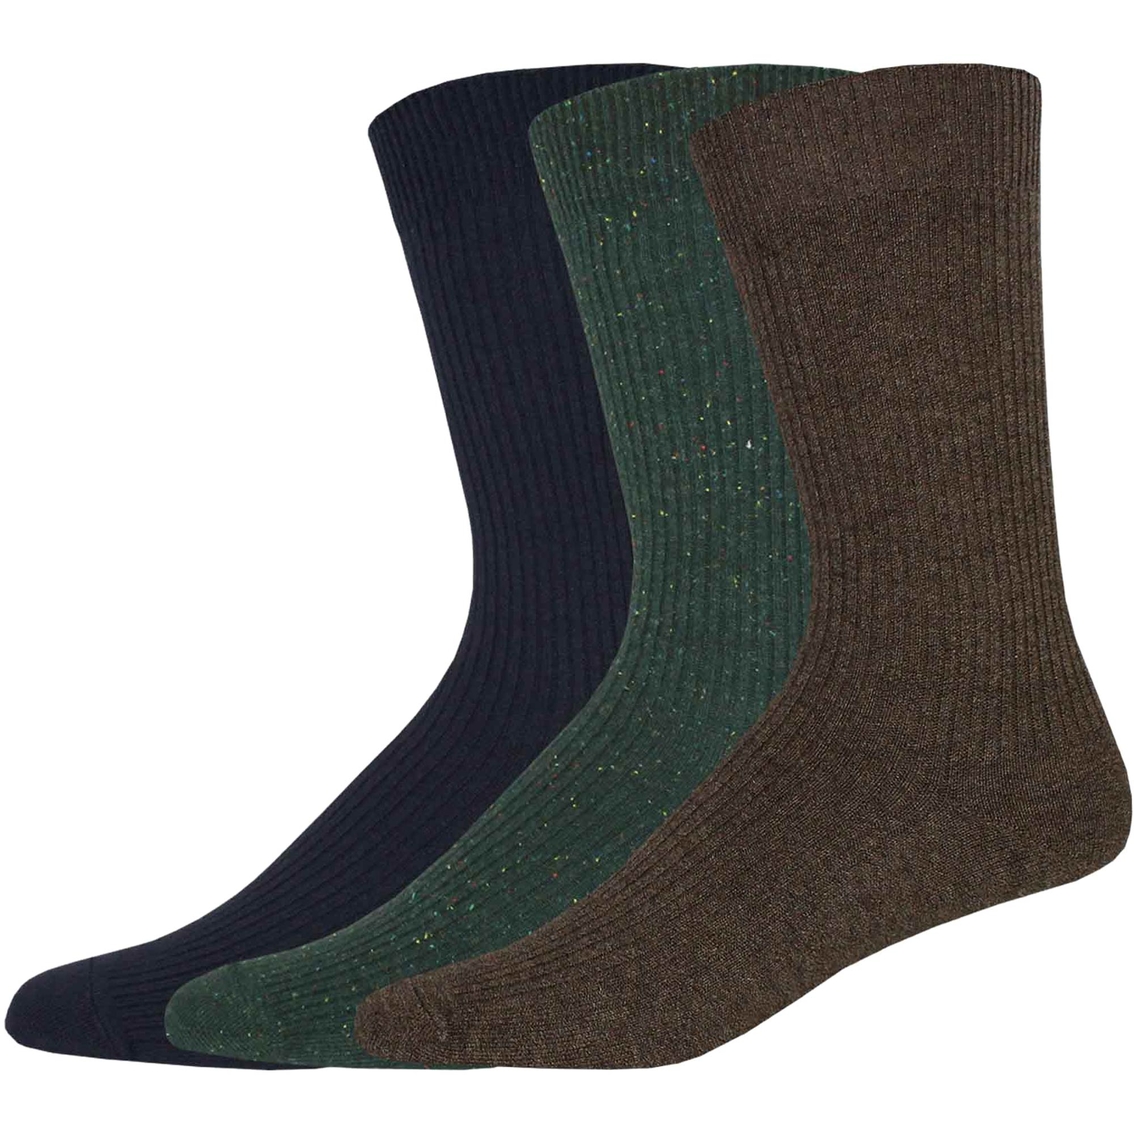 Dockers Men's Lightweight Ribbed Crew Socks 3 Pk. | Socks | Clothing ...